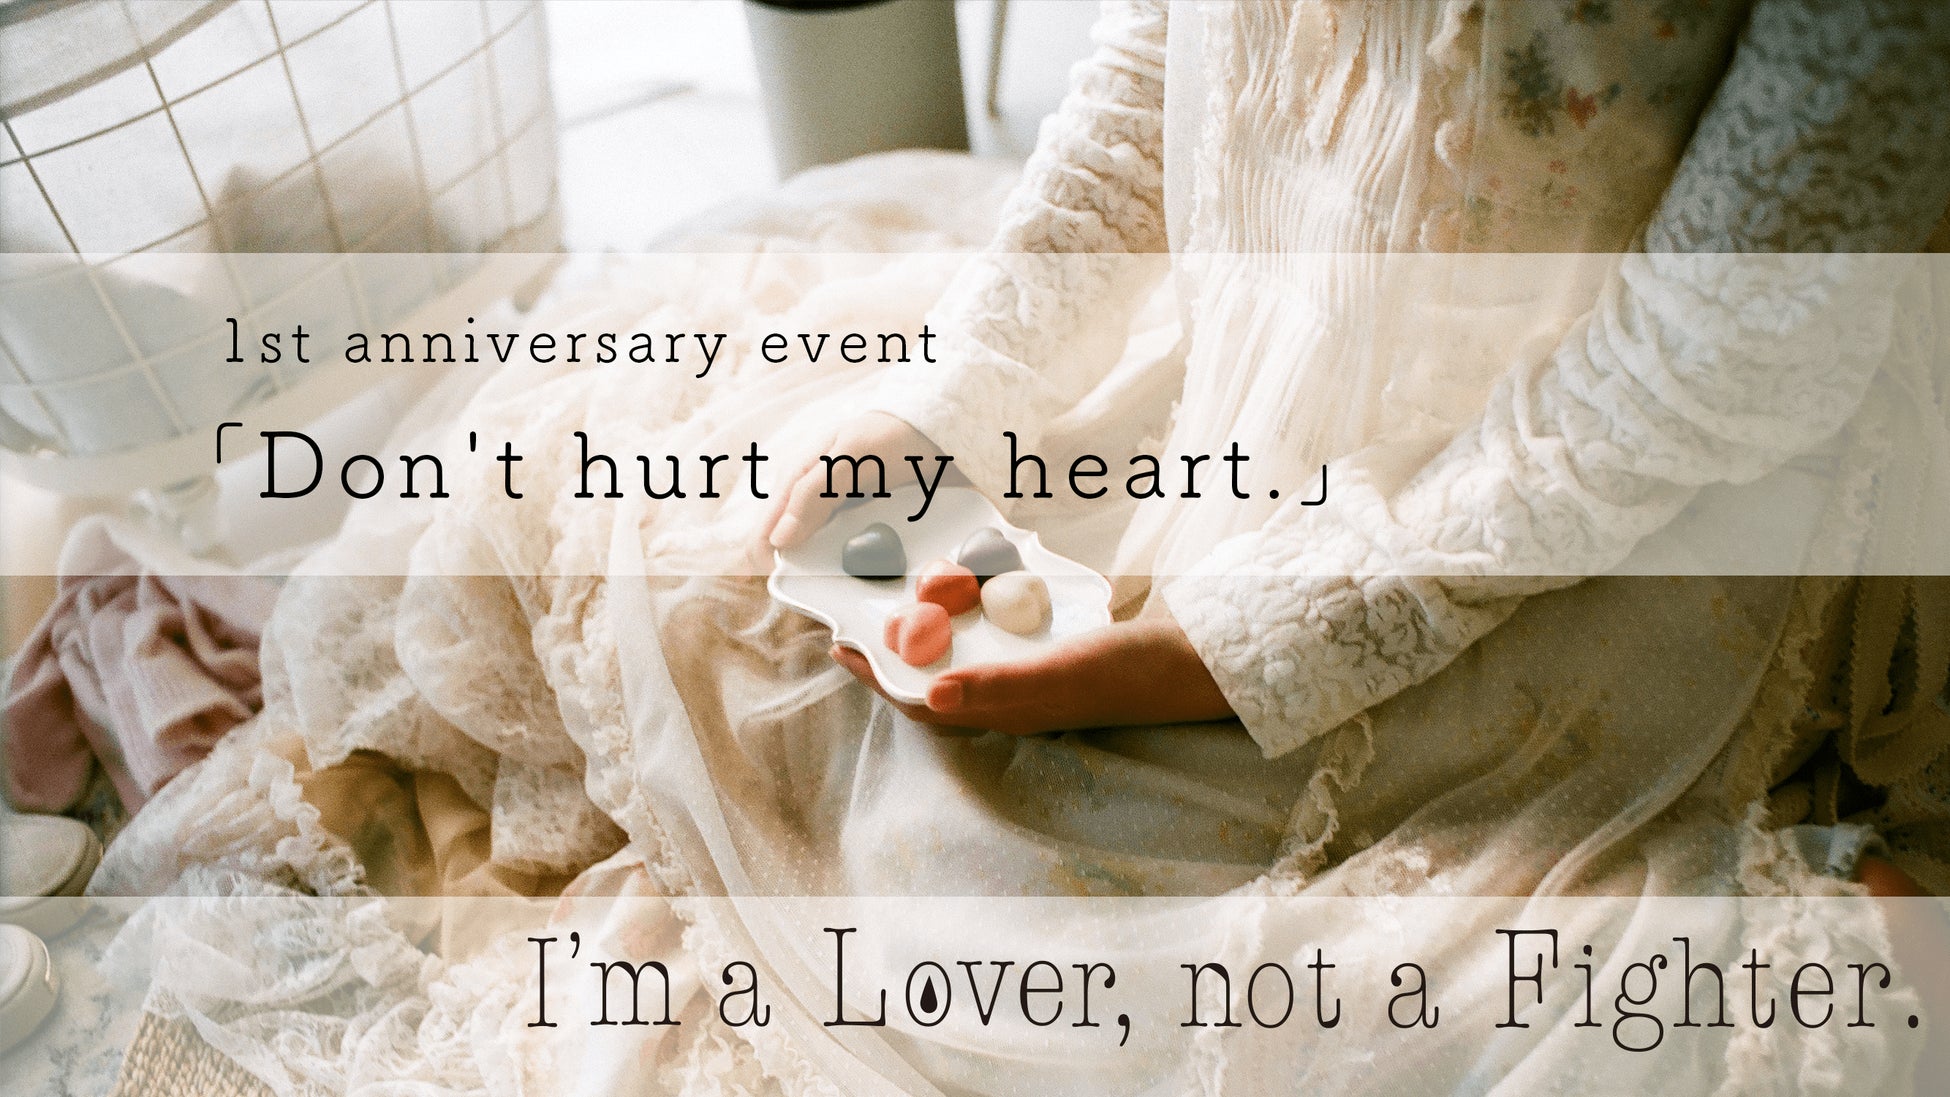 【株式会社para】自社プロジェクト『I’m a Lover, not a Fighter.』のリリース1周年を記念した特別展示会開催のお知らせ